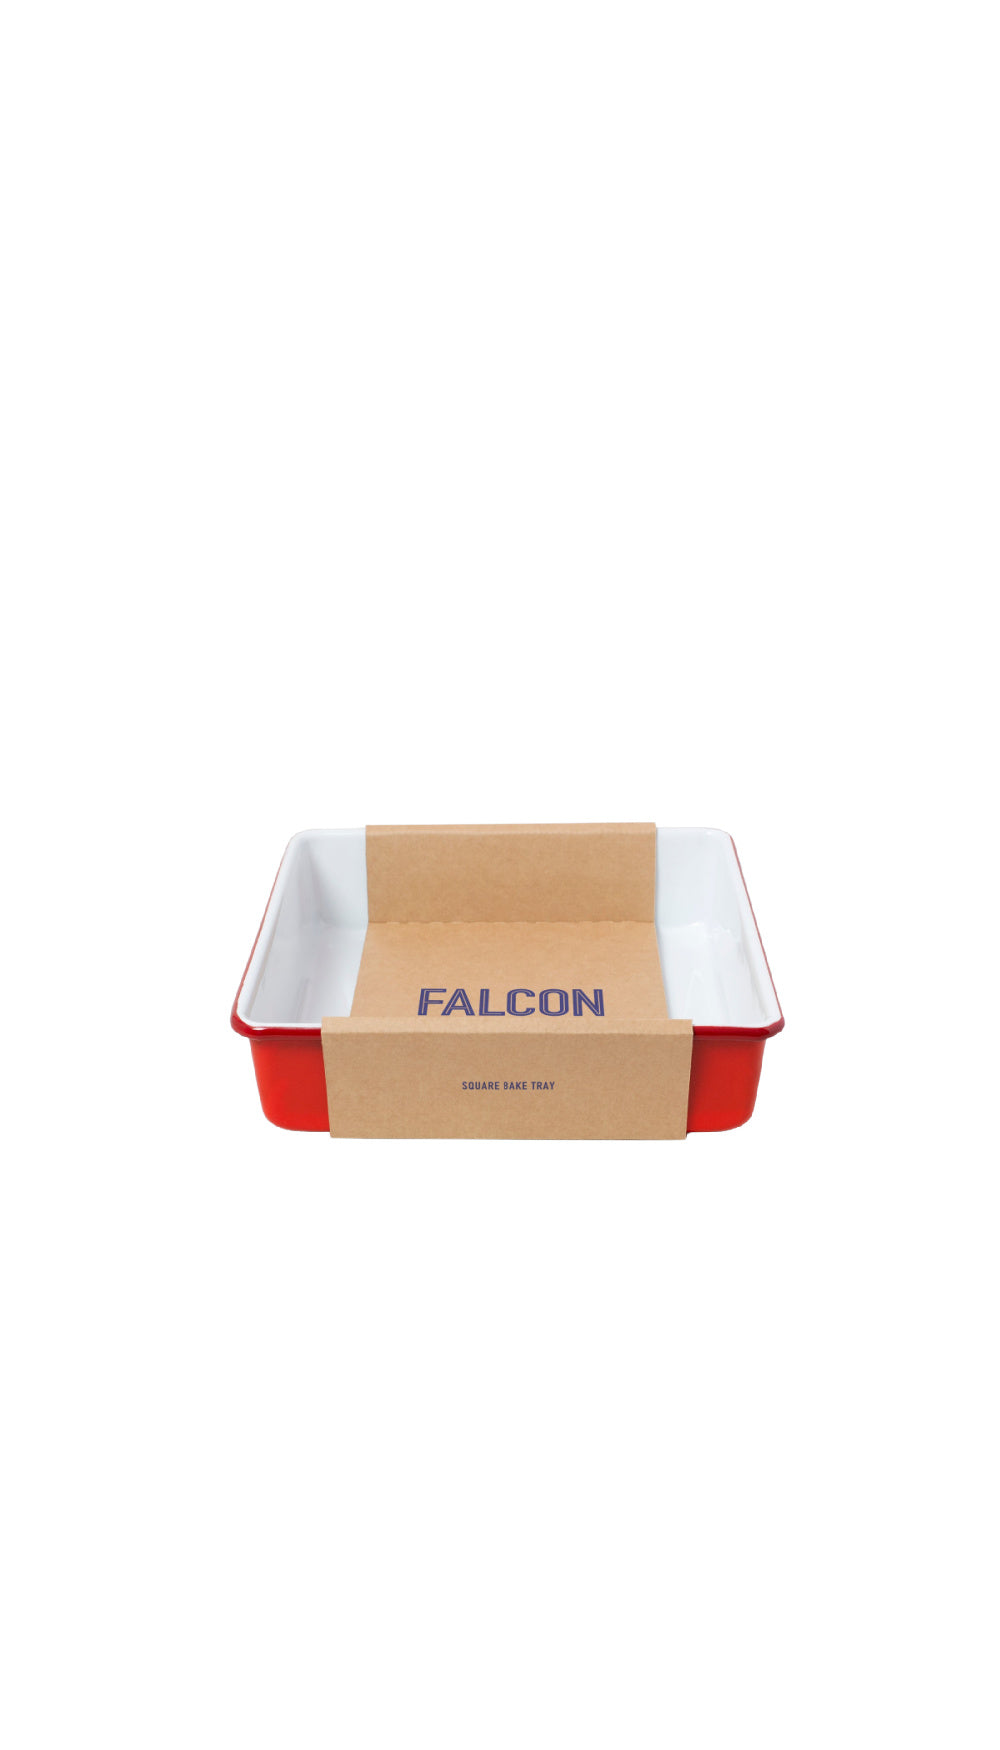 Square Bake Tray / FALCON WARE